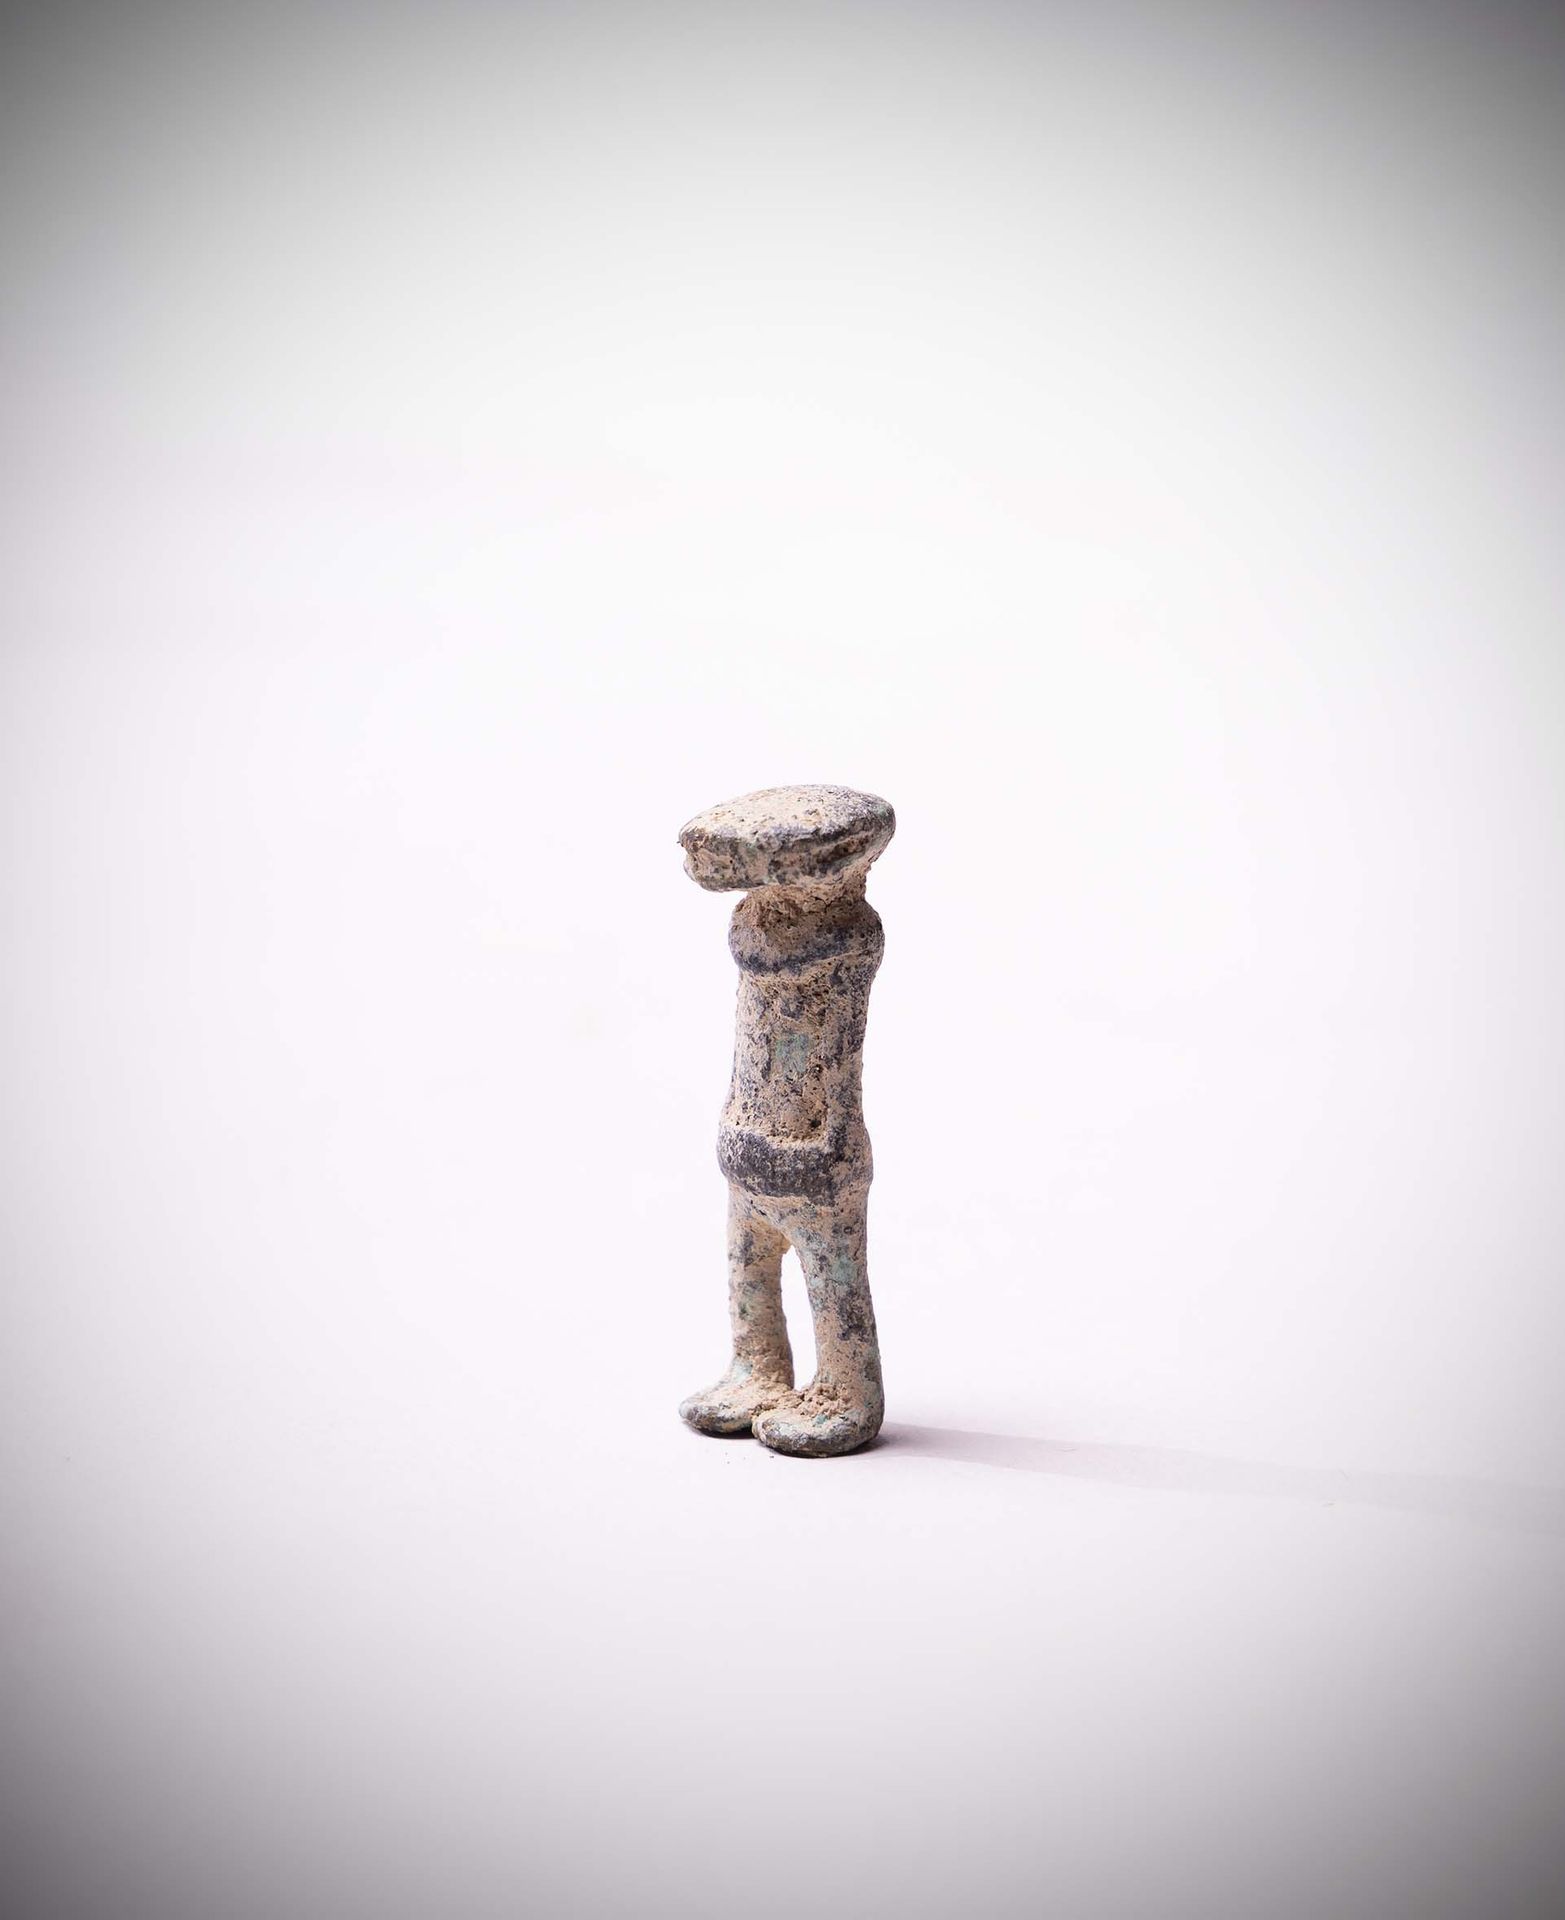 Null Sao

(Chad) Figura humana en bronce con pátina oxidada y terrosa.

Esta cul&hellip;